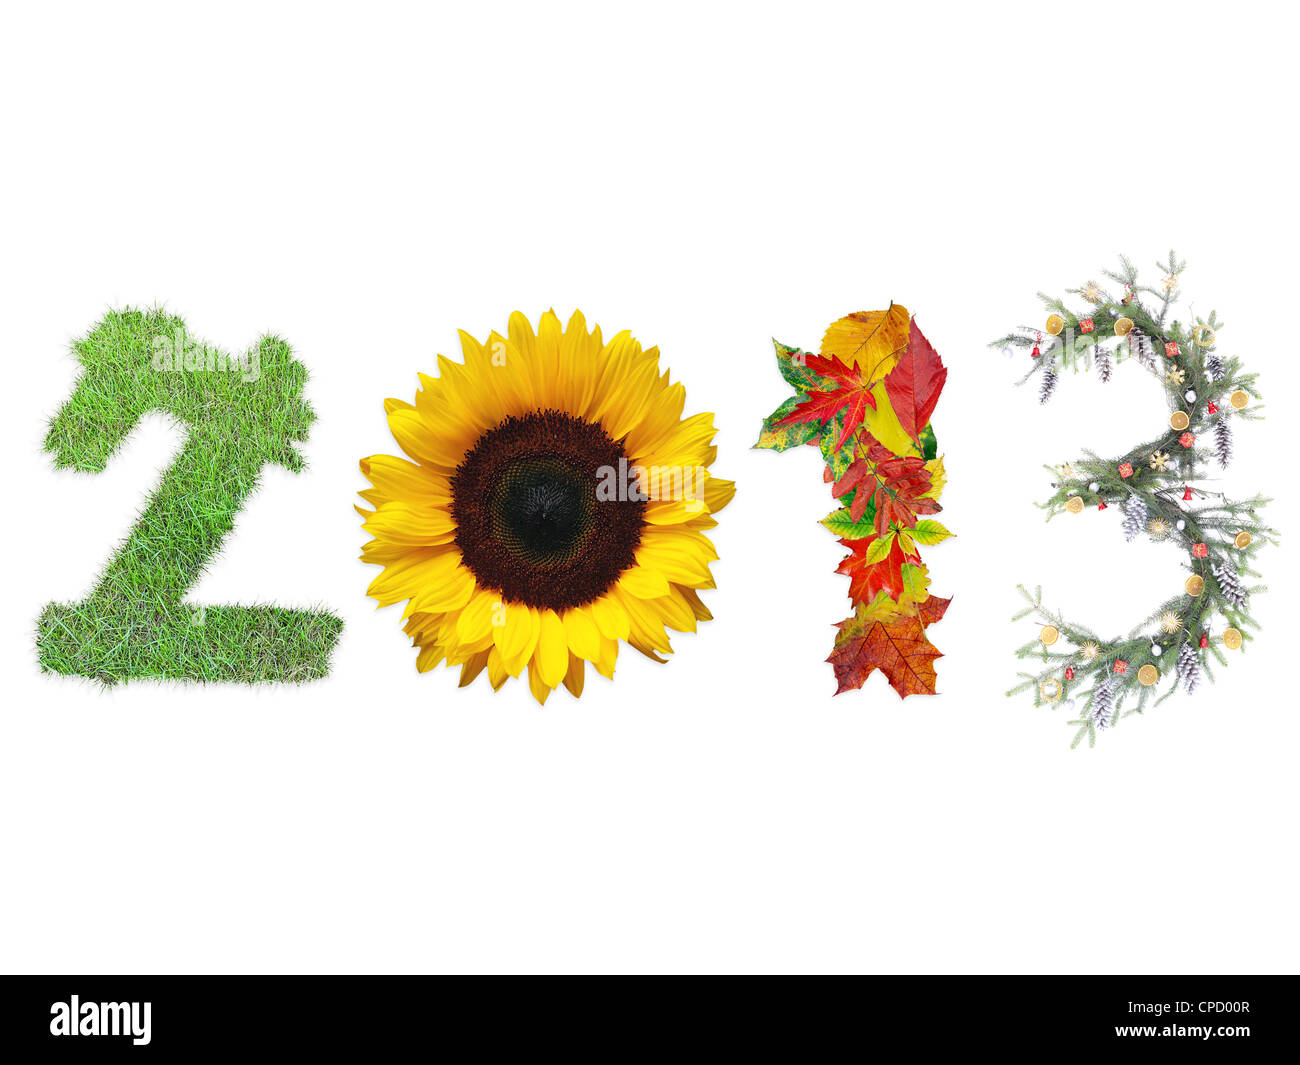 2013 Ziffern gemacht frische Gräser, Sonnenblumen, Toten fallen Blätter und Weihnachten Kranz vertreten vier Jahreszeiten des Jahres Stockfoto